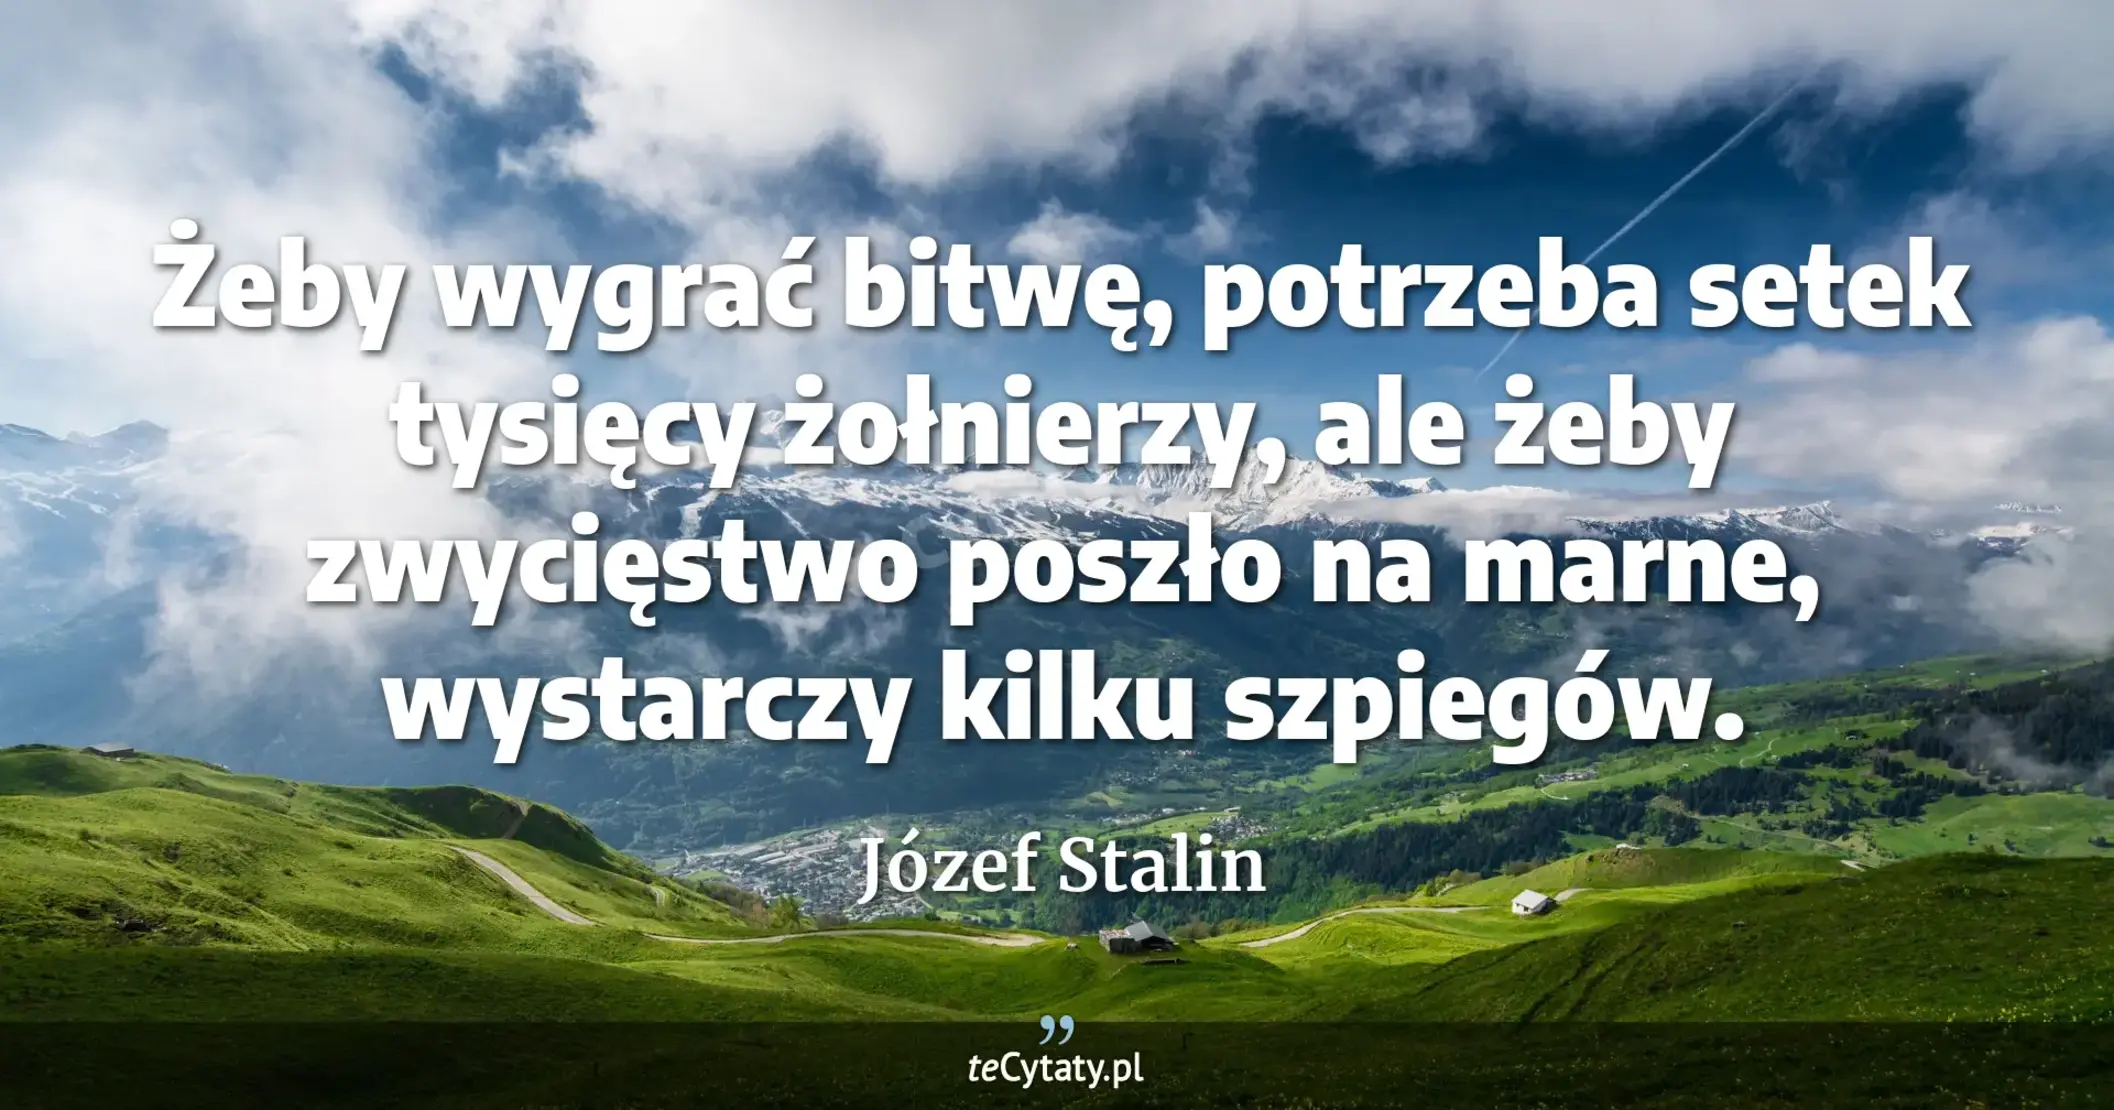 Żeby wygrać bitwę, potrzeba setek tysięcy żołnierzy, ale żeby zwycięstwo poszło na marne, wystarczy kilku szpiegów. - Józef Stalin